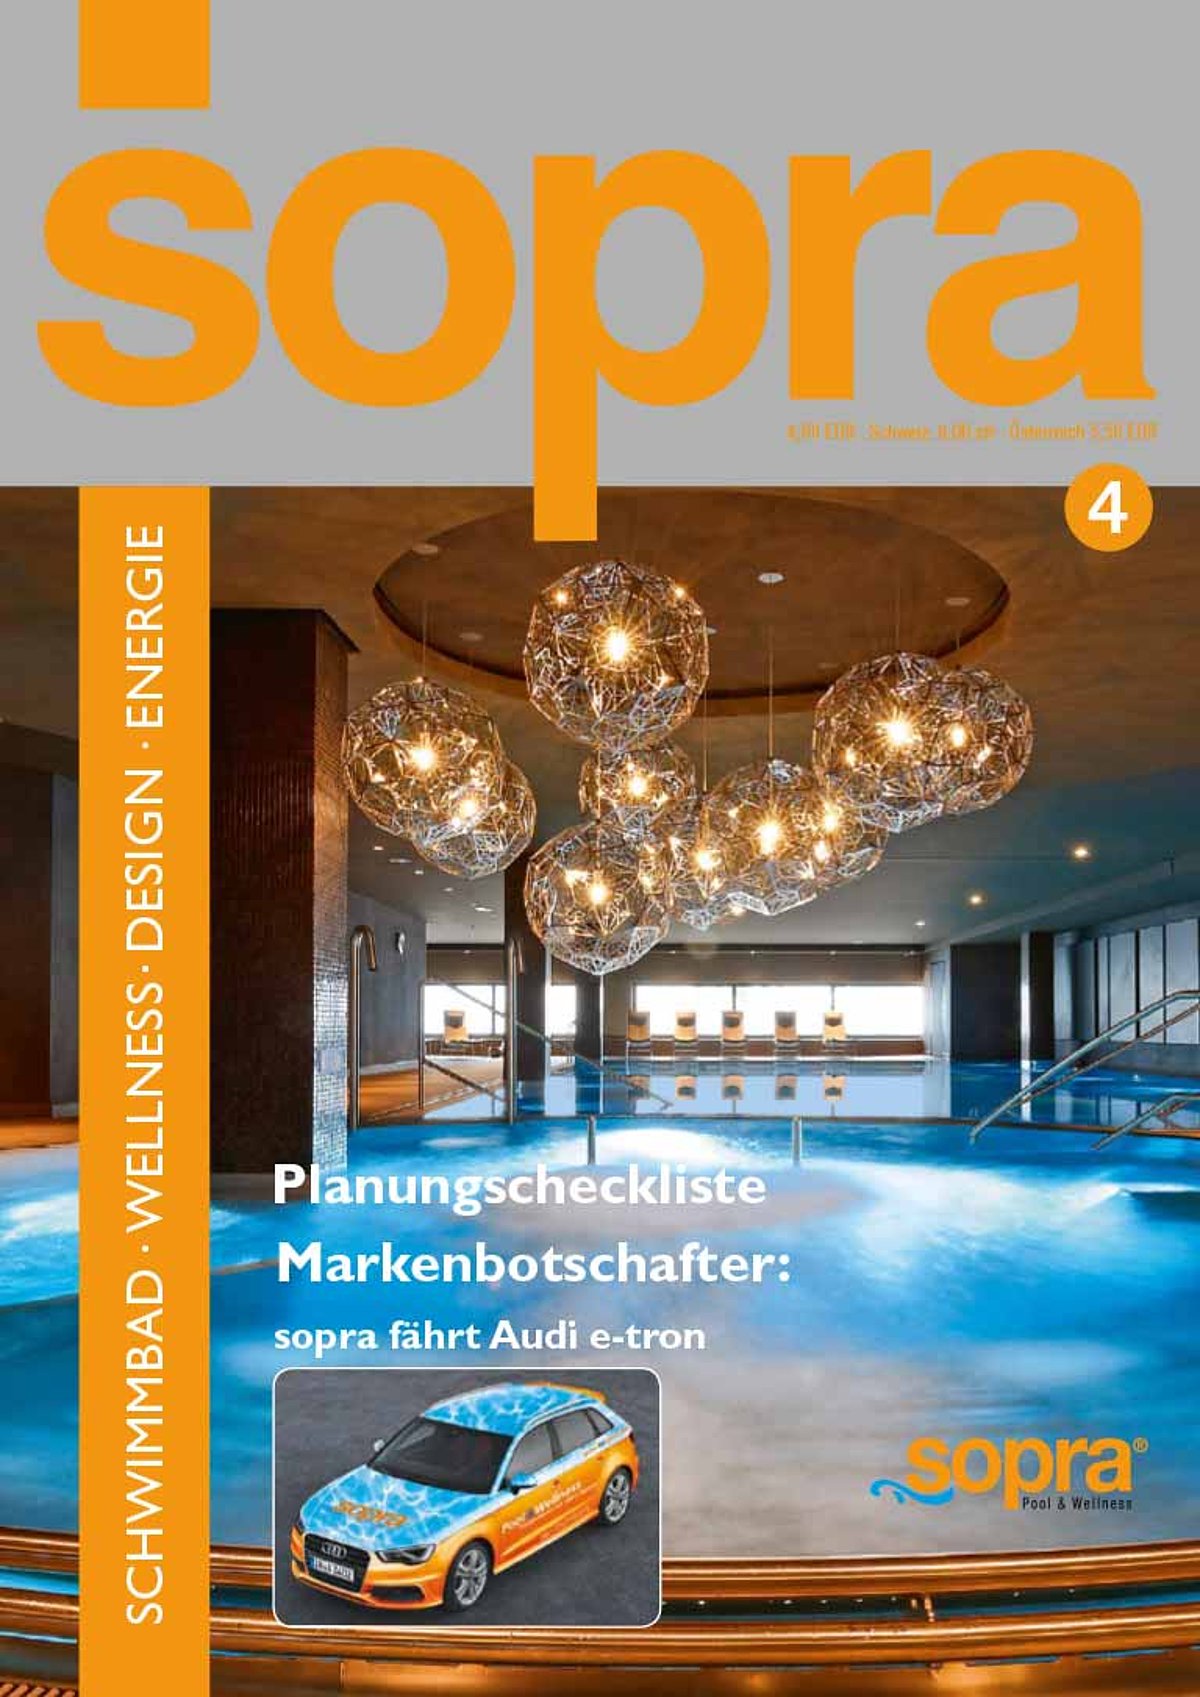 Das Cover der Druckversion des sopra Kundenmagazins Ausgabe 4.